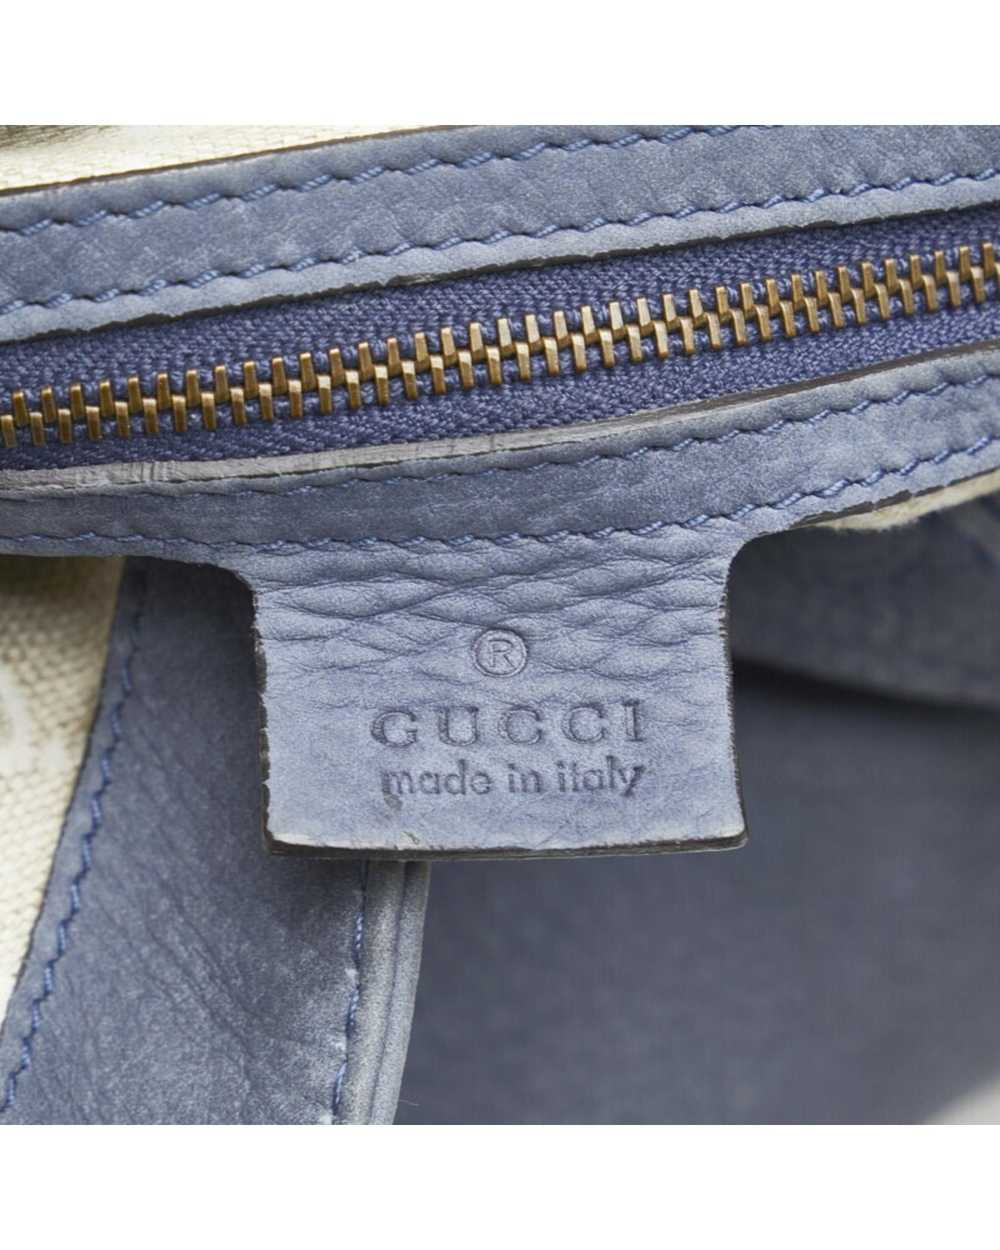 Gucci Luxury Soft Leather Shoulder Bag - image 8